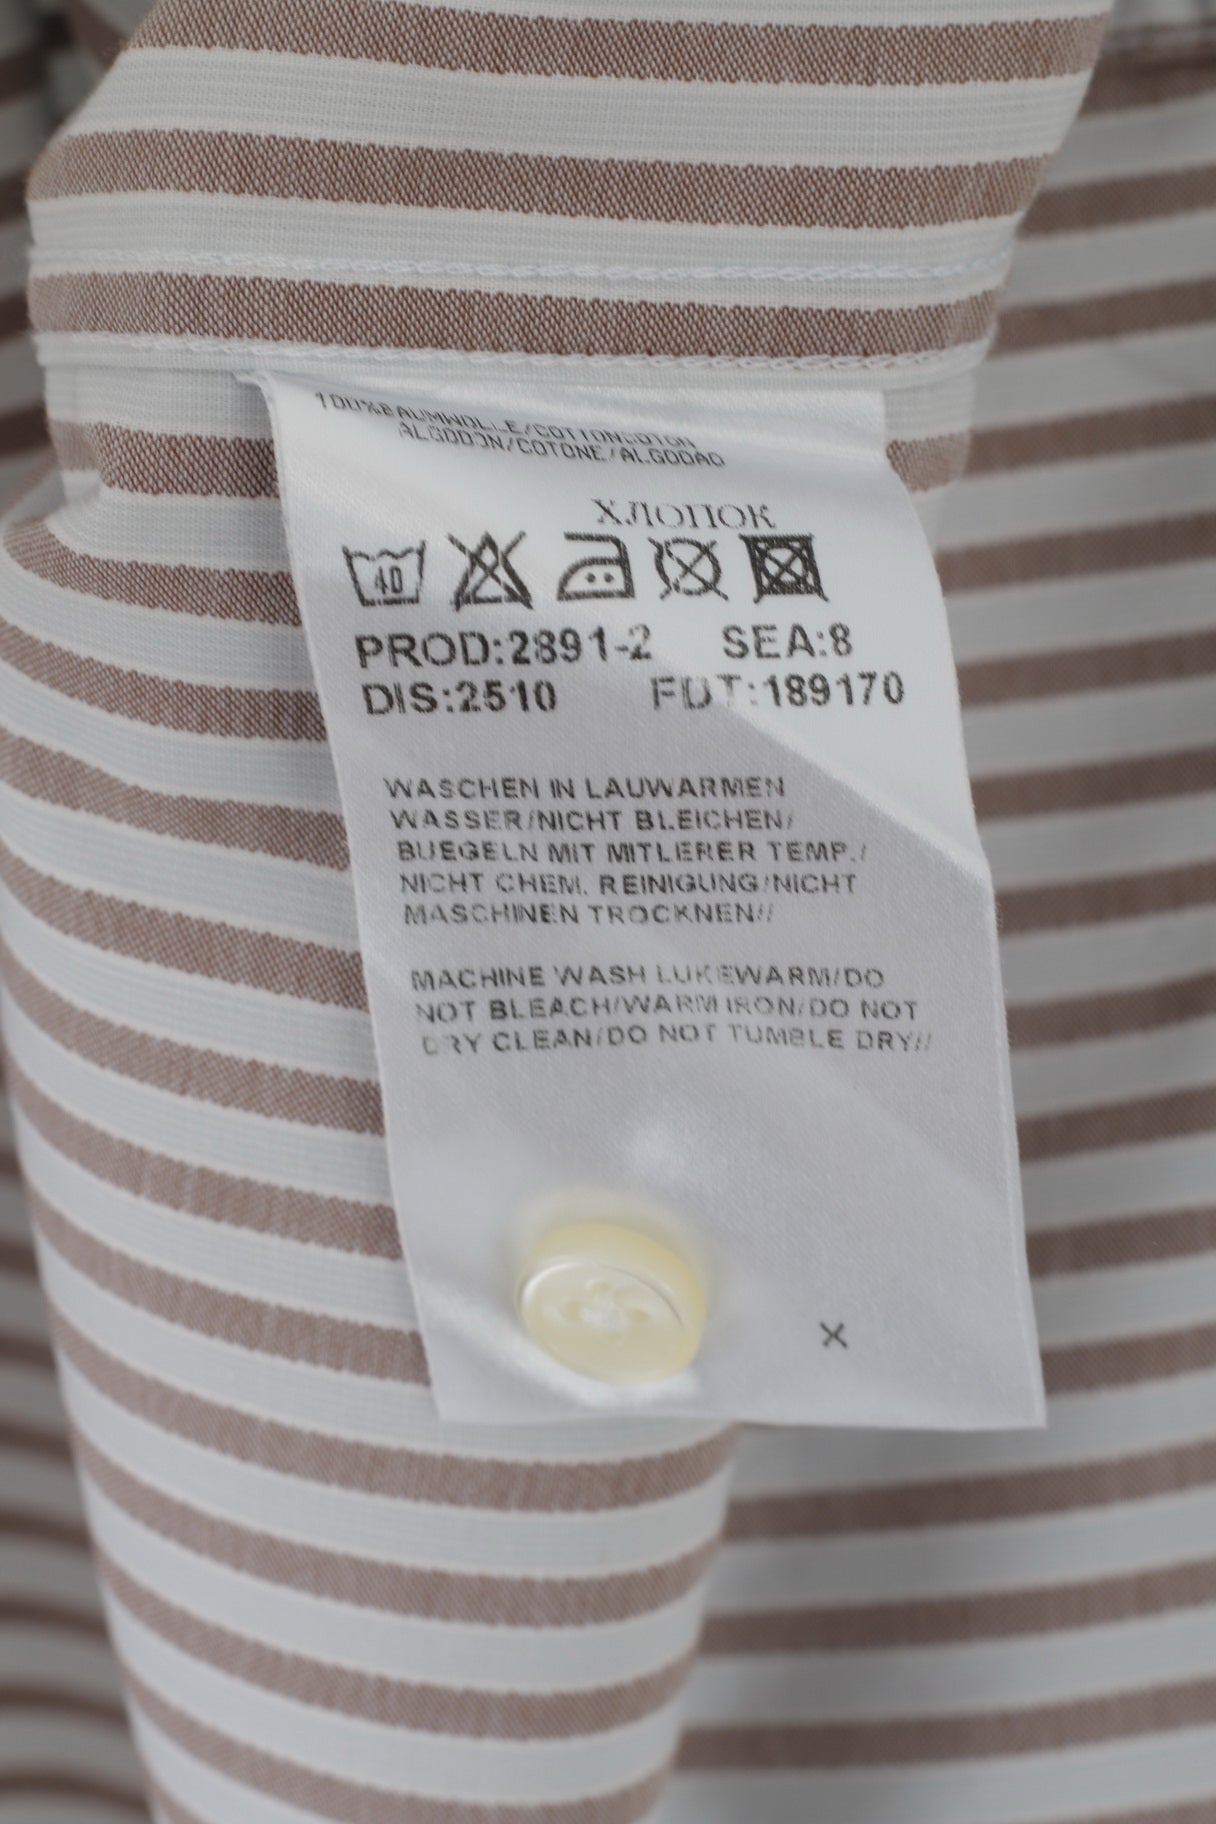 Hugo Boss Camicia casual da uomo 42 16,5 L Top regolare a maniche lunghe in cotone a righe marrone